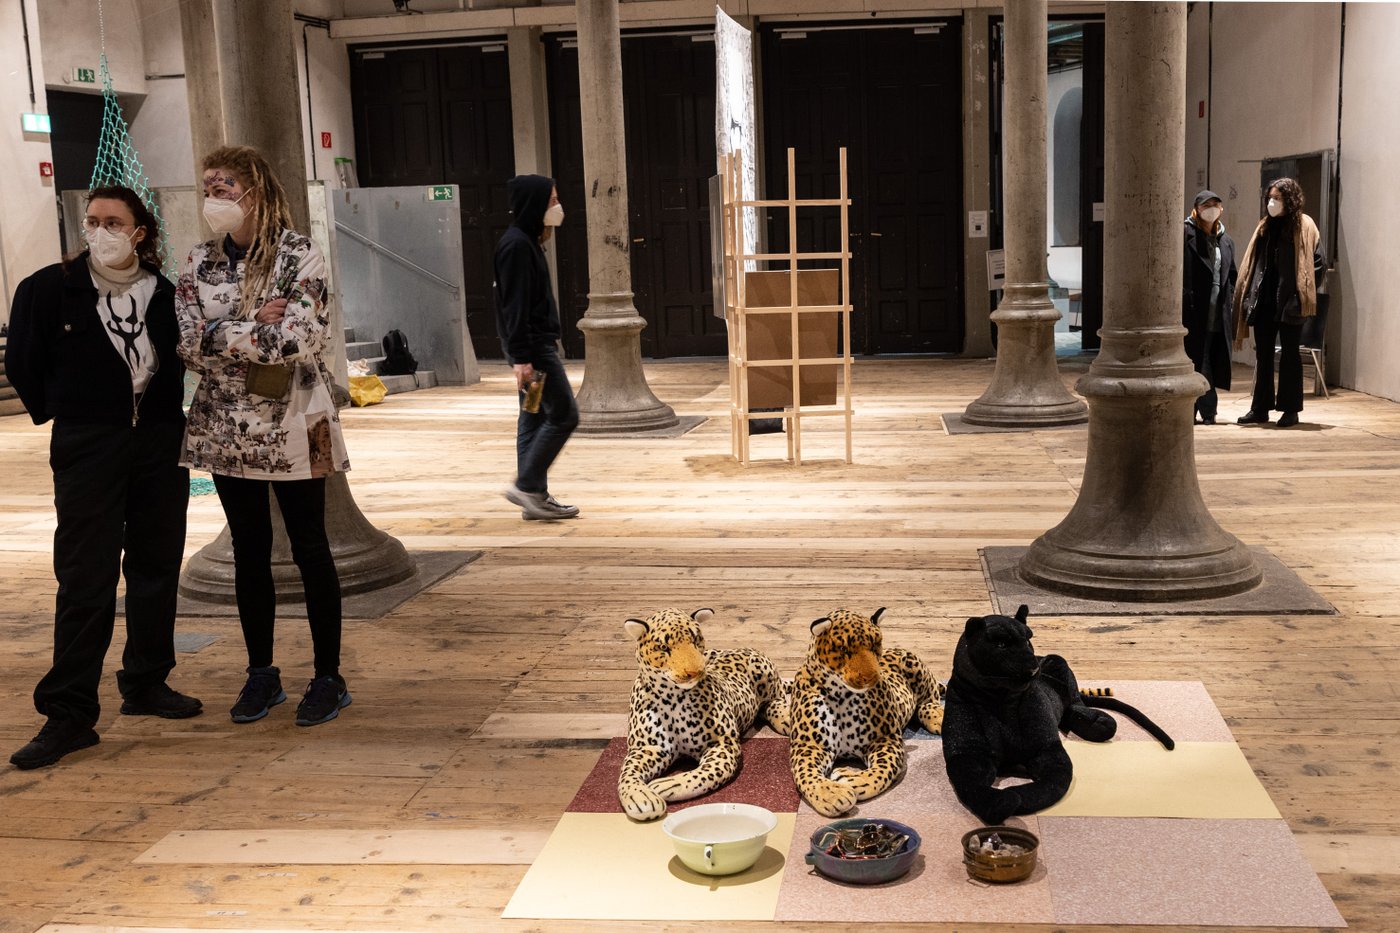 Mehrere Personen mit FFP2-Masken stehen in einem Raum mit Säulen und Holzboden. Im Vordergrund sieht man eine künstlerische Arbeit: 3 Ausgestopfte Wildkatzen, 2 Leoparden ein Panther, die vor Fressnäpfen in derselben Haltung auf dem Boden liegen.